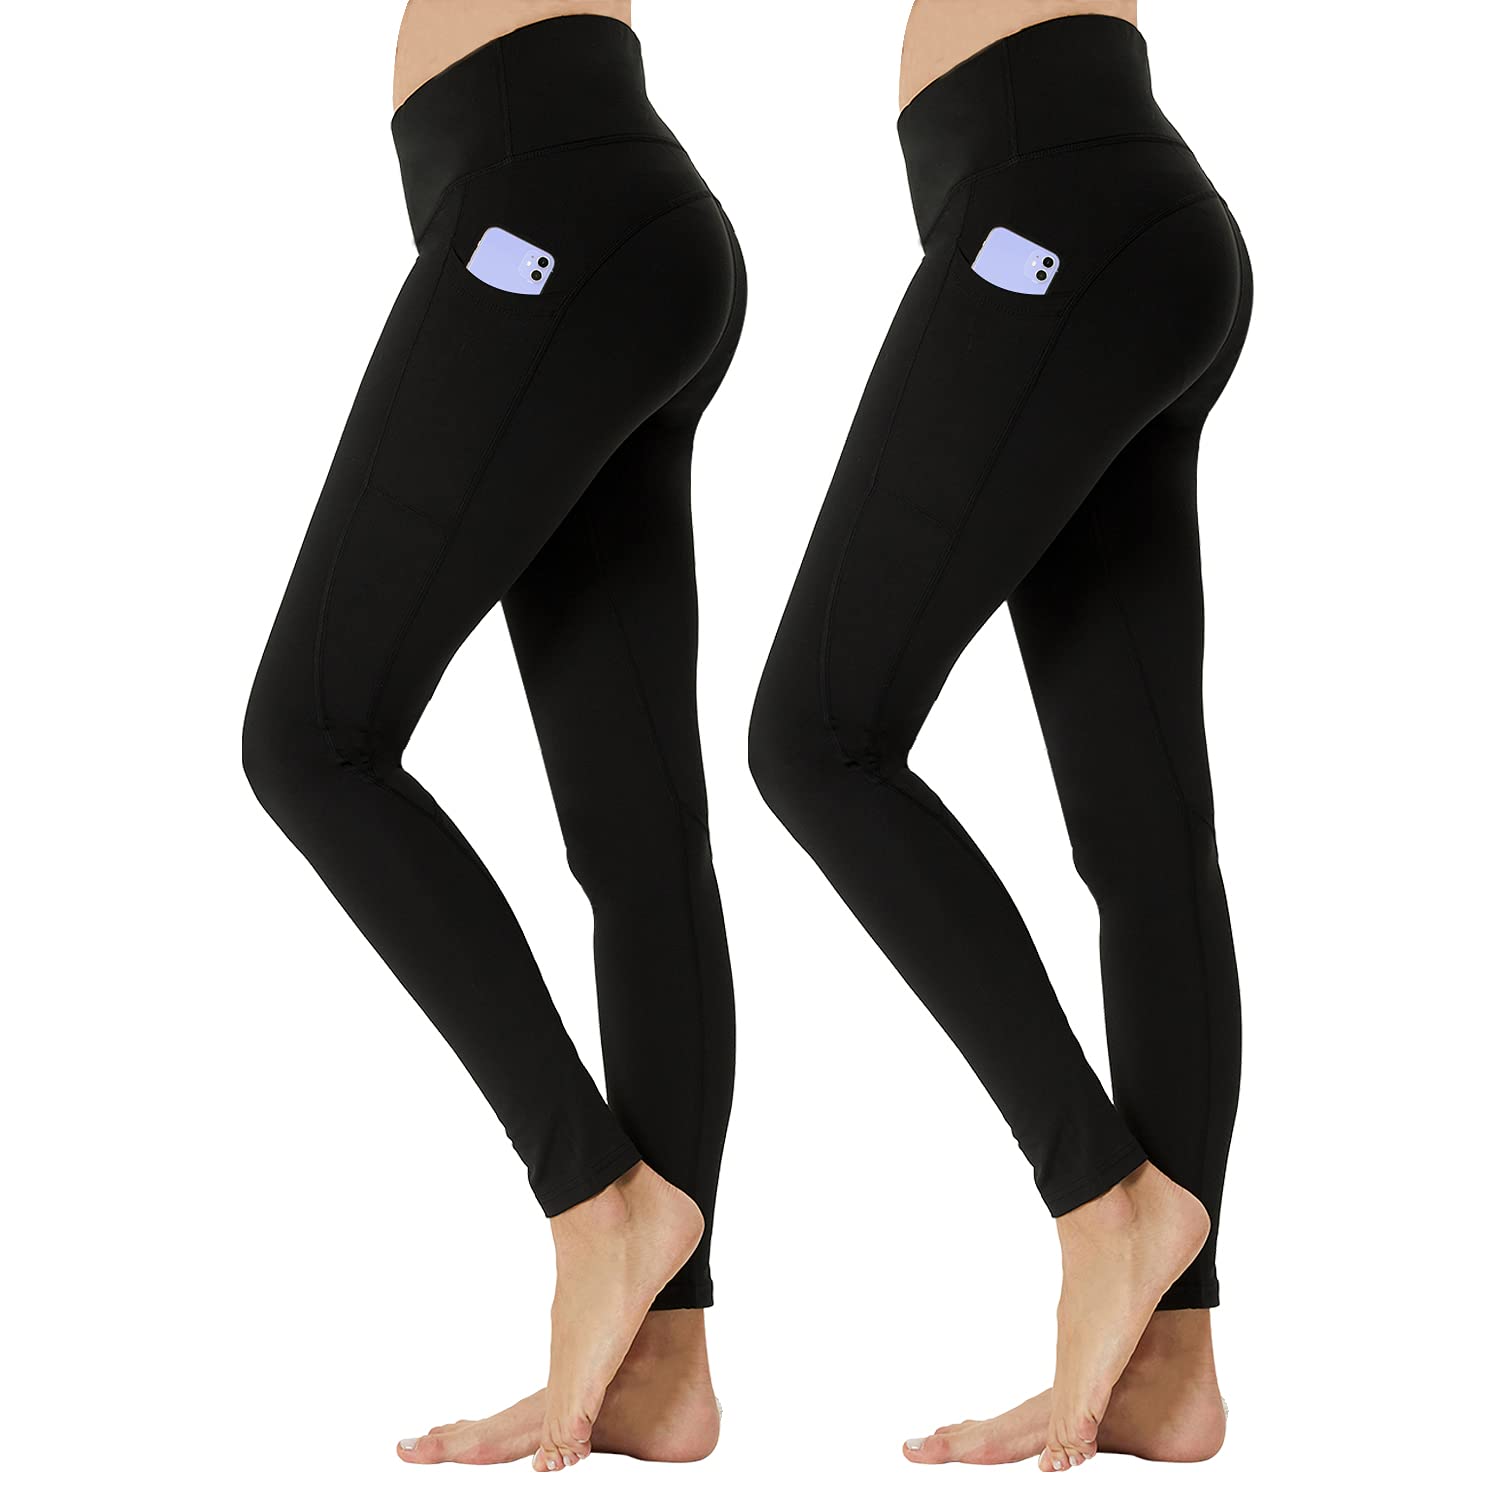 Yoga Pants For Women With Pockets Women Girls Leggings Skinny